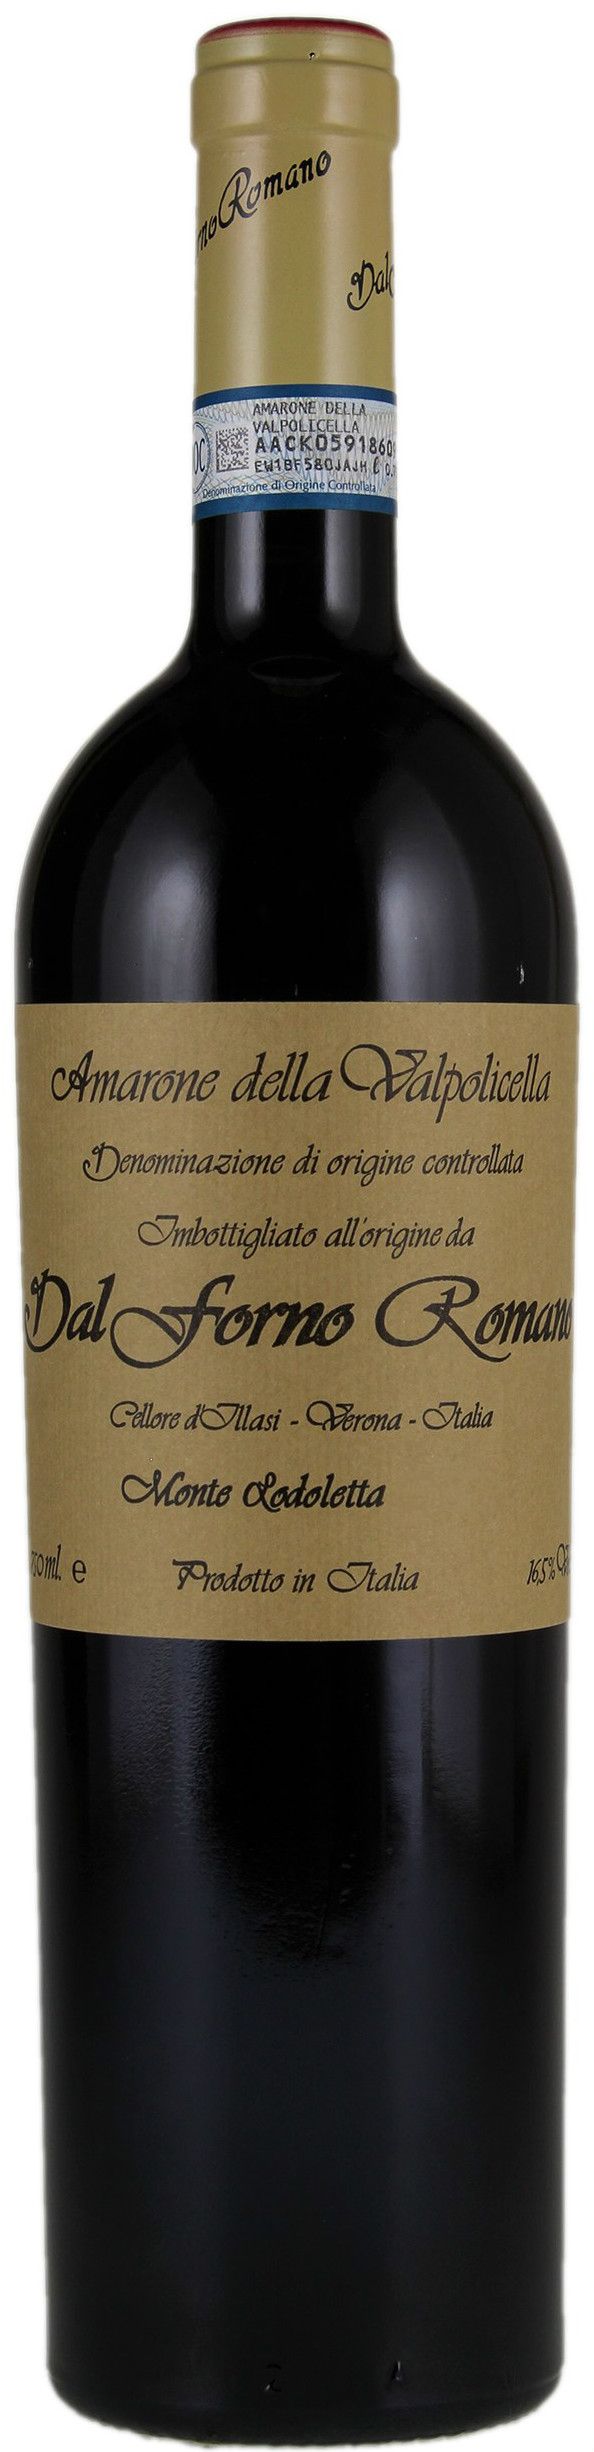 Dal Forno Romano, Amarone Della Valpolicella, 1998